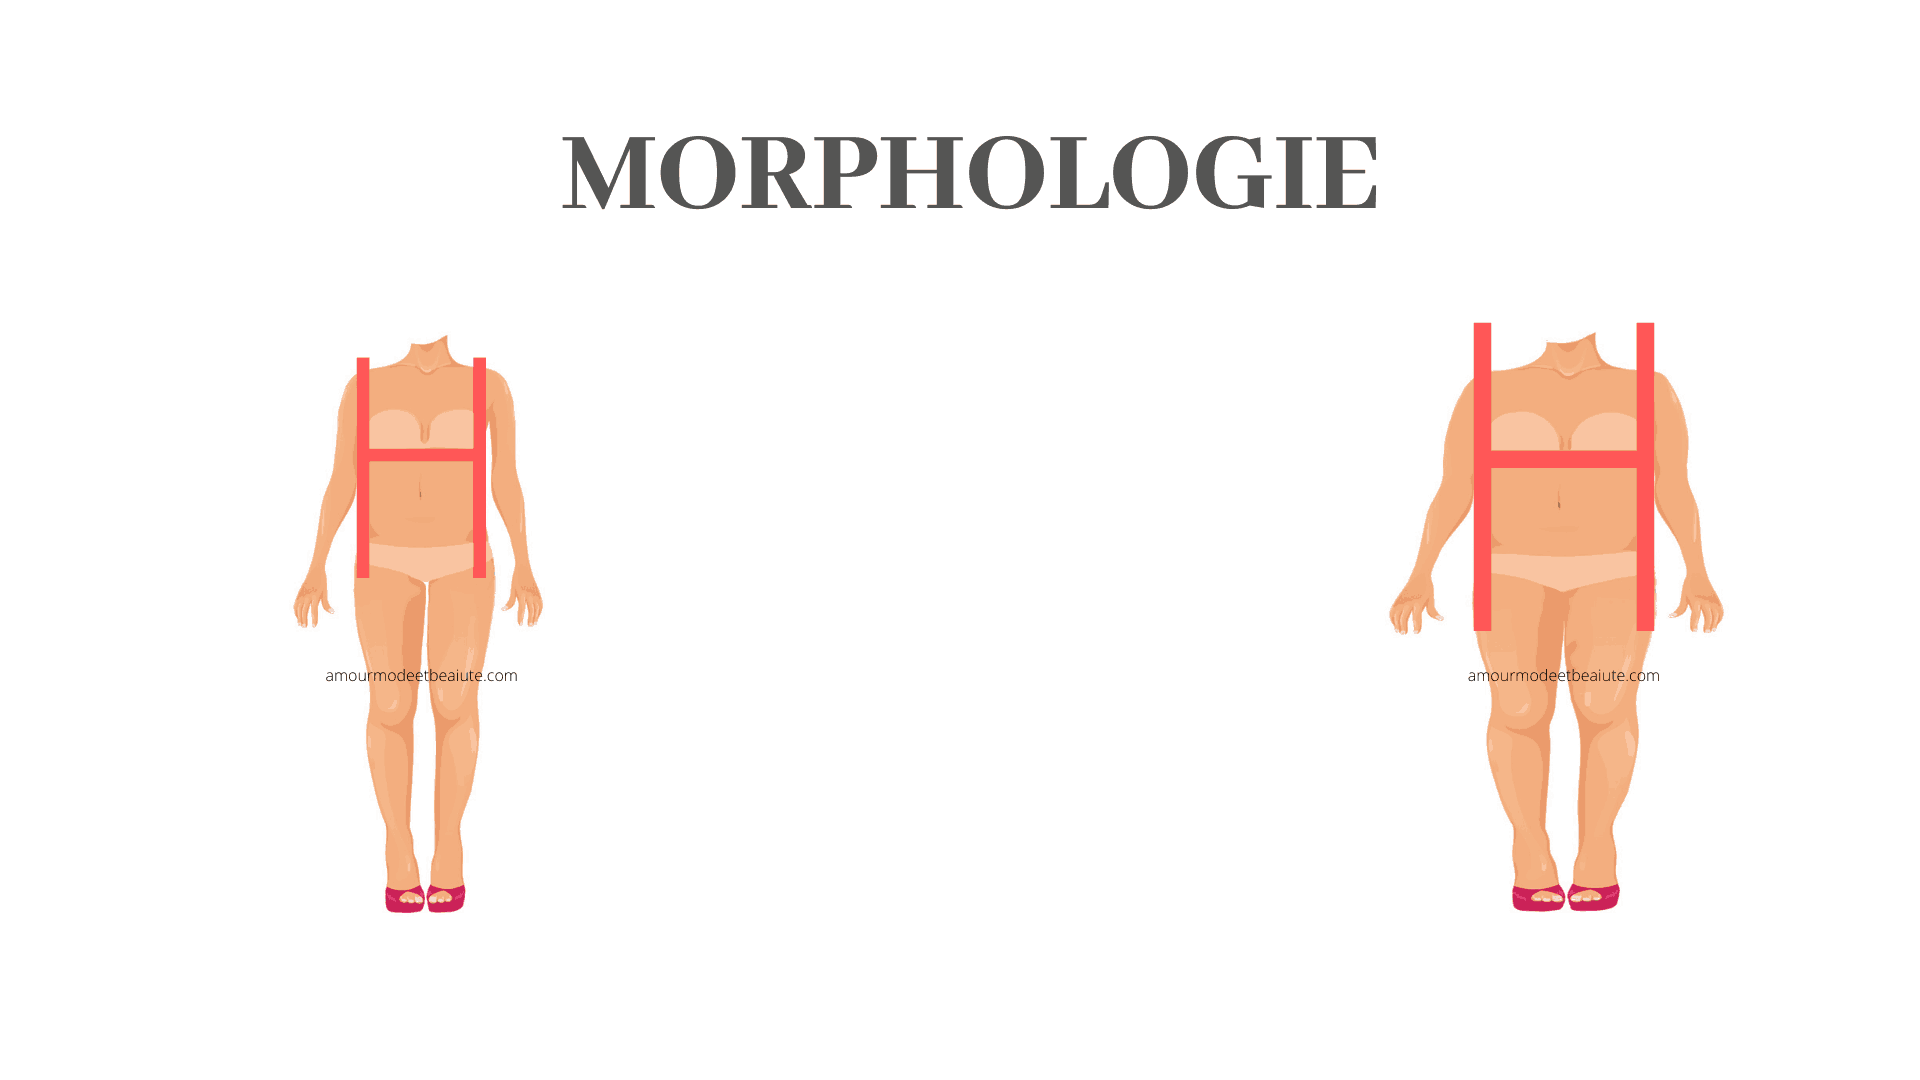 quel vetement pour morphologie en h, morphologie en h comment s habiller, vetement morphologie h, vetement pour morphologie en h, comment s habiller quand on a une morphologie en h, morphologie h comment s habiller, morphologie rectangle comment s habiller, conseil morphologie h , vetement pour morphologie h , quel vetement pour une morphologie en h, comment s habiller quand on est en h, femme morphologie h, morphologie en h femme, look pour morphologie en h, morphologie femme h, comment s habiller morphologie h, s habiller avec une morphologie en h , morphologie en h, morphologie en h femme vetement, vetement pour silhouette en h, silhouette en h comment s habiller, tenue morphologie h, tenue pour morphologie en h, morphologie h femme, comment s habiller avec un corps en h, corps en h comment s habiller, morphologie h, vetements morphologie en h